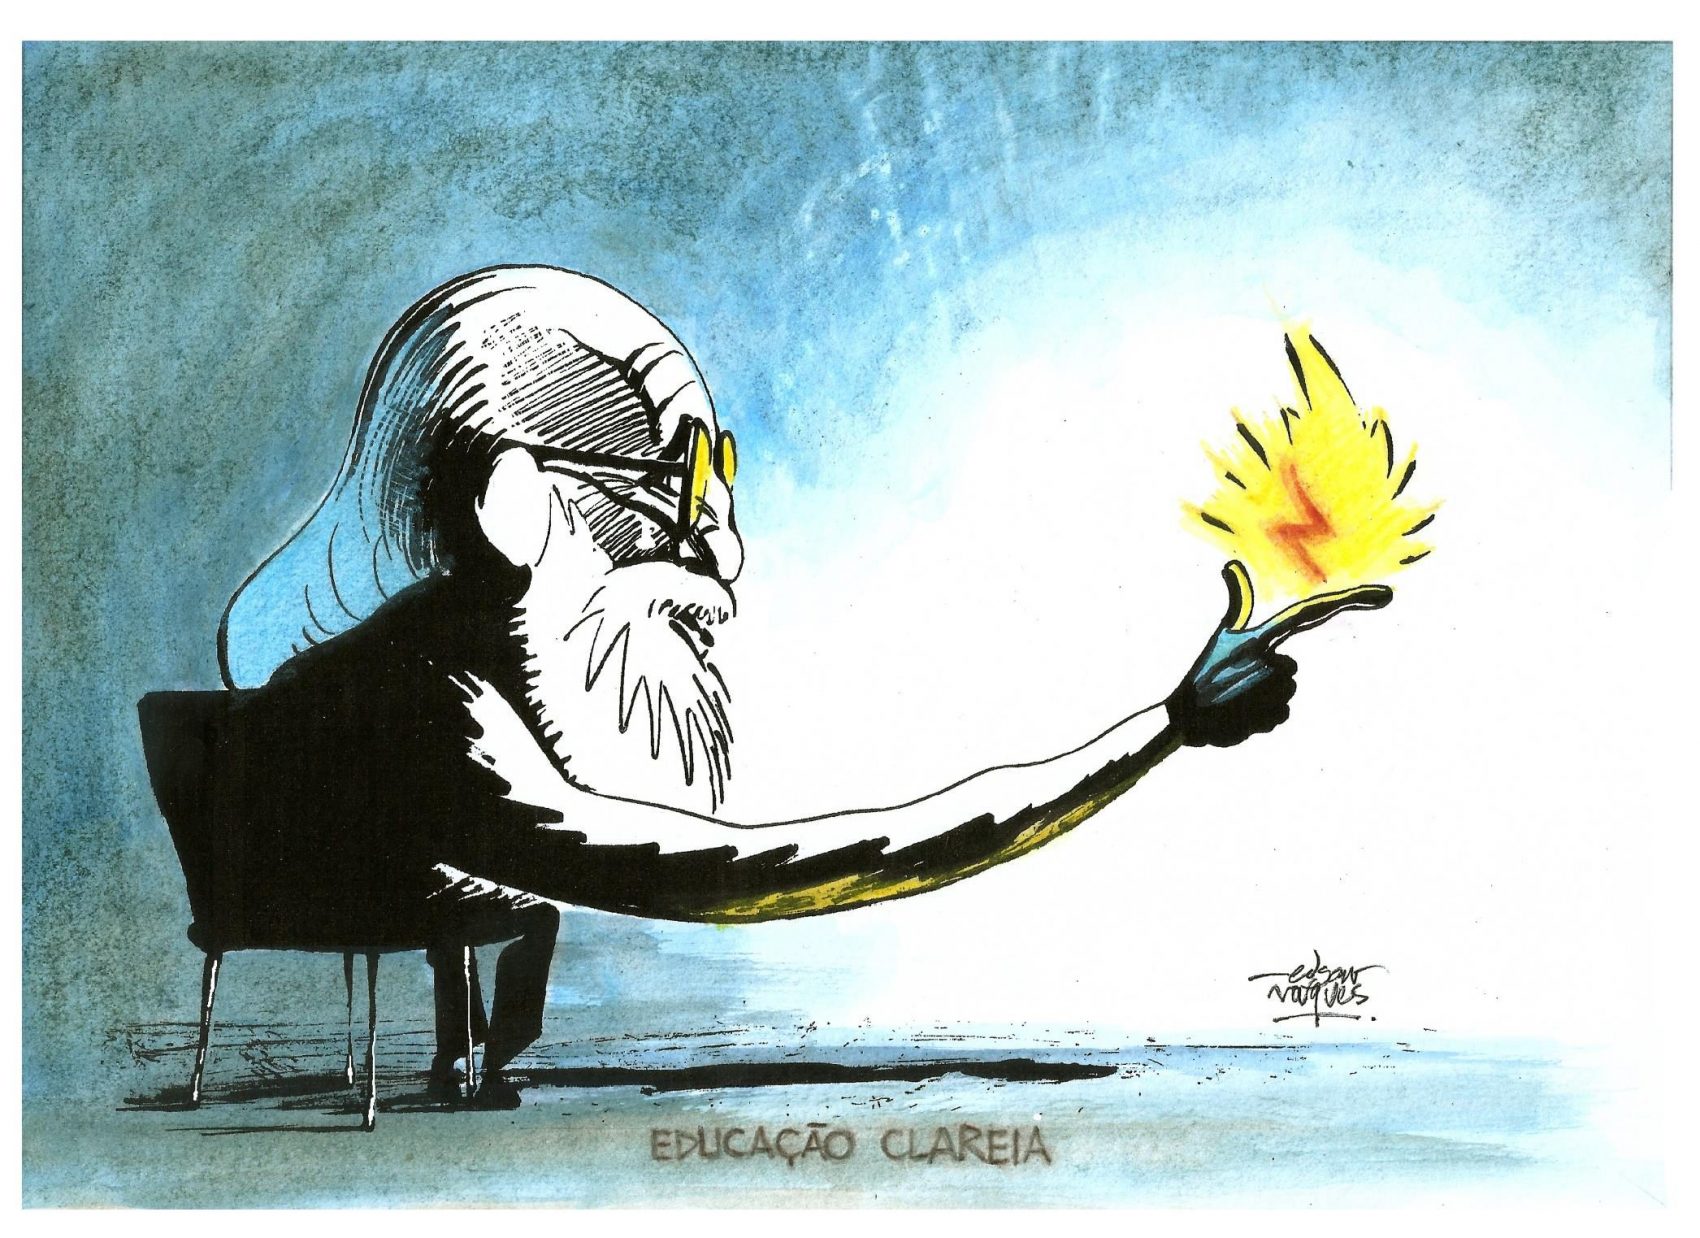 Ilustração de Edgar Vasques, que integra a coleção de cartões produzidos em parceria com a Grafar para comemorar o centenário de Paulo Freire